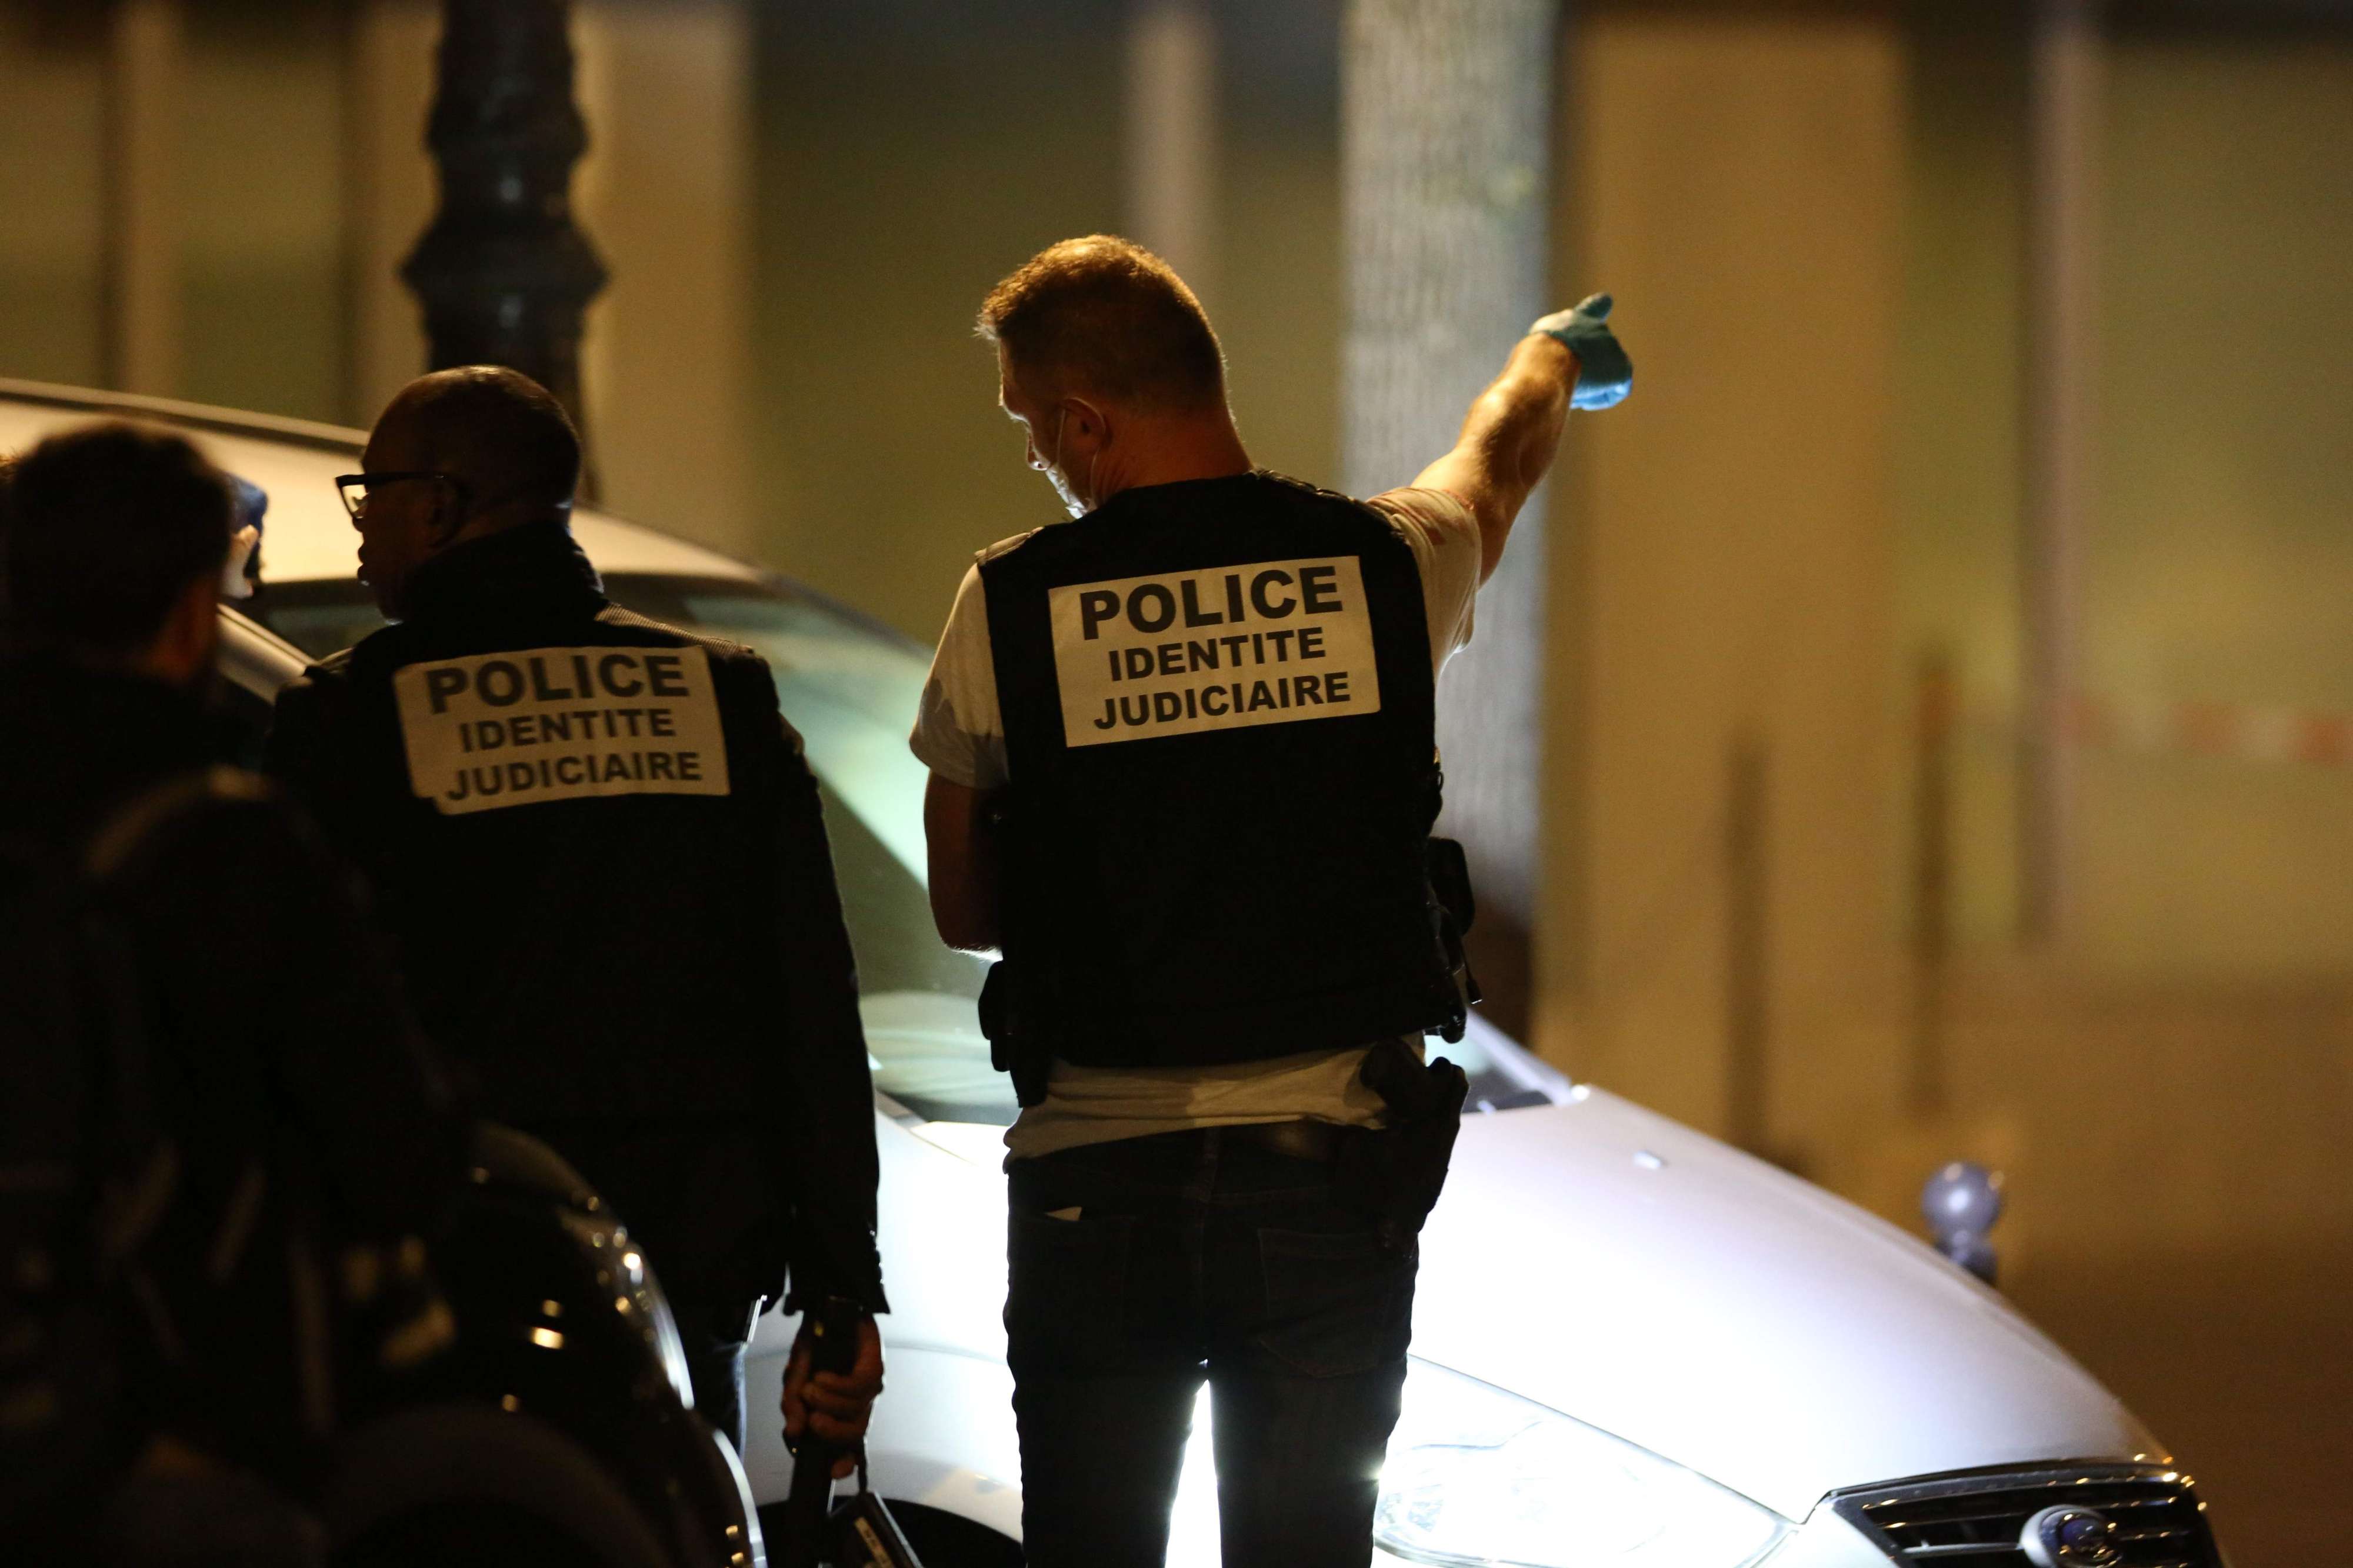 الهجمات بالسلاح الأبيض تكاثرت في باريس خلال الشهور الاخيرة